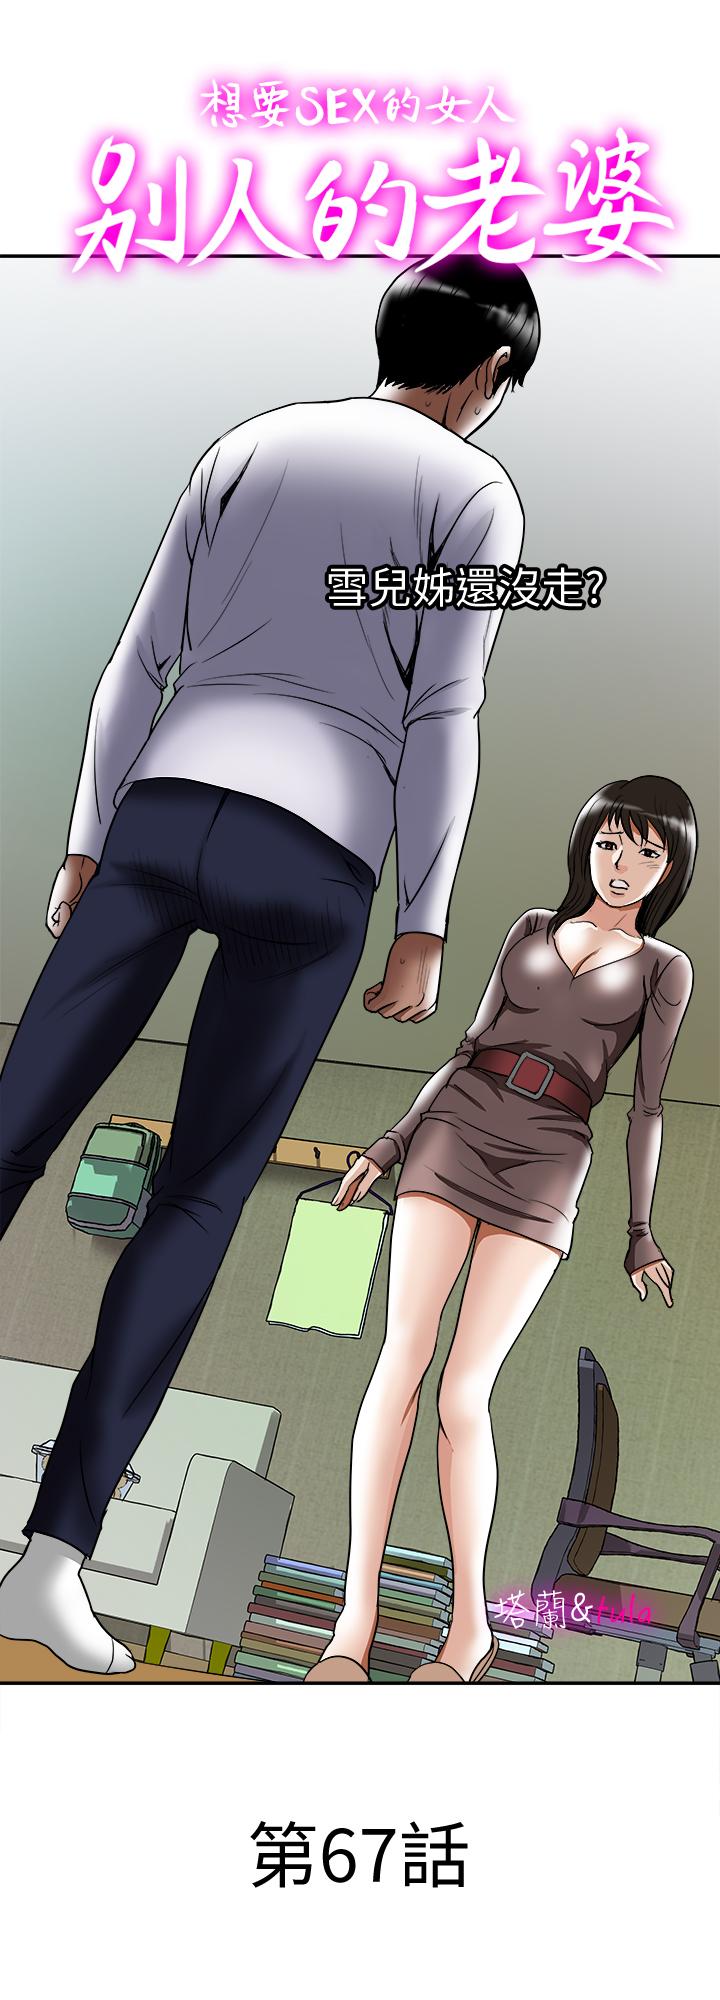 韩国污漫画 別人的老婆 第67话(第2季)-扭曲的欲望 1